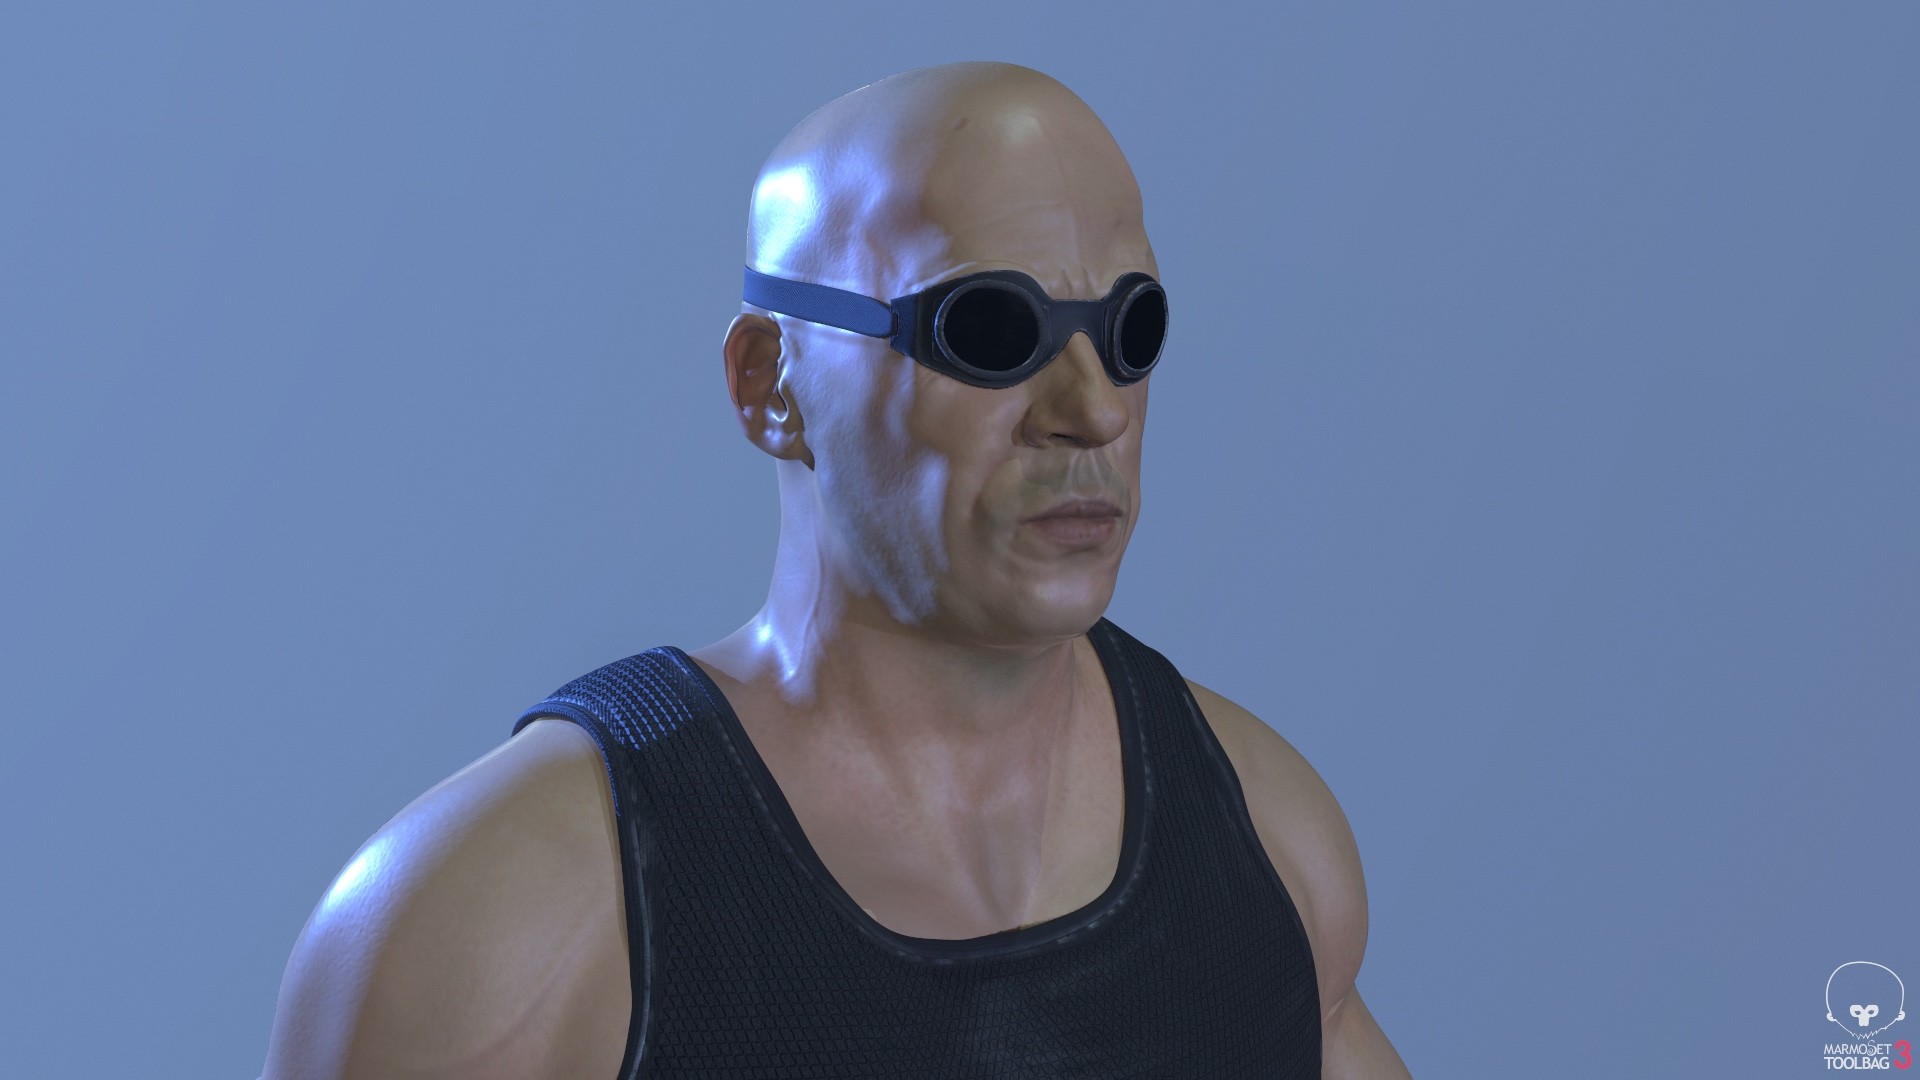 ArtStation - Vin Diesel as Riddick